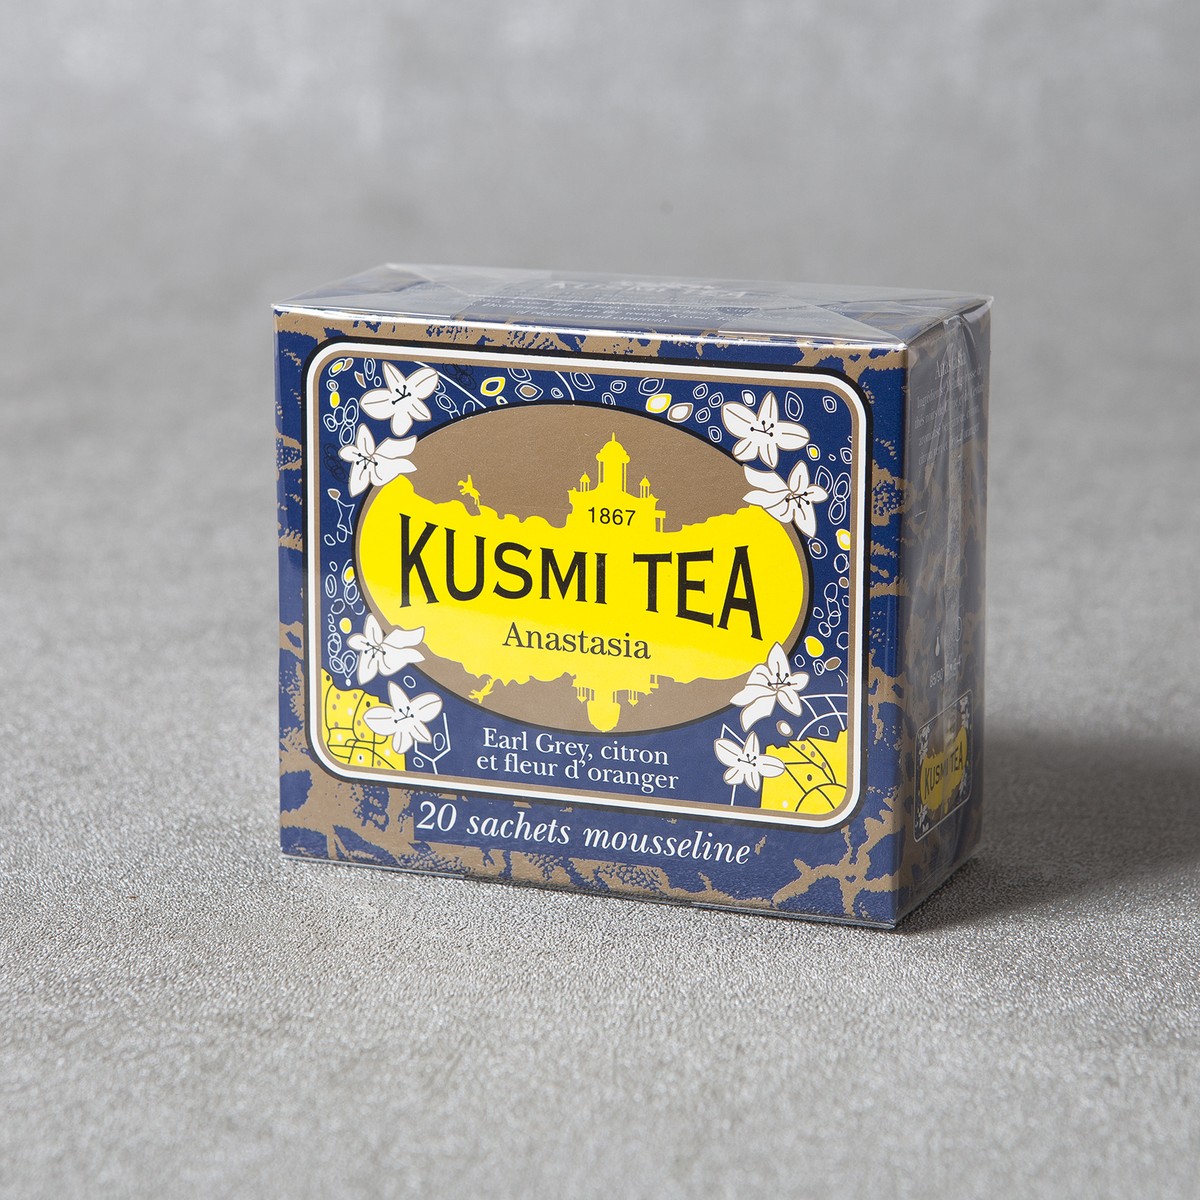 Kusmi Tea  Anastasia boite 20 sachets  boite 20 sachets